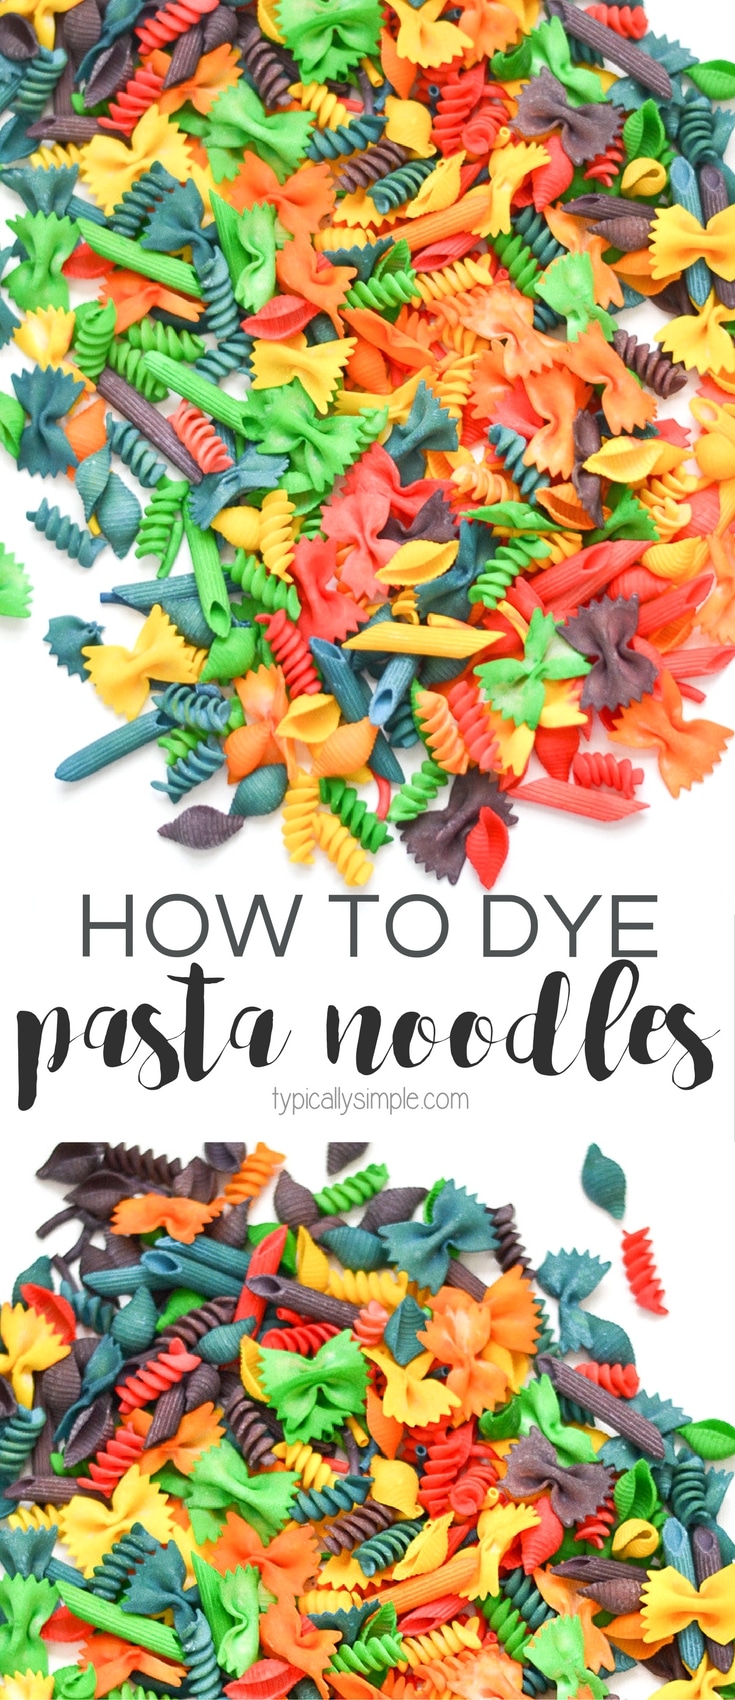 Kleurige pasta noedels zijn geweldig om te gebruiken voor knutselen, sensorische bakken, en sorteer activiteiten. Deze eenvoudige handleiding laat zien hoe je pasta kunt verven in batches in een regenboog van kleuren!